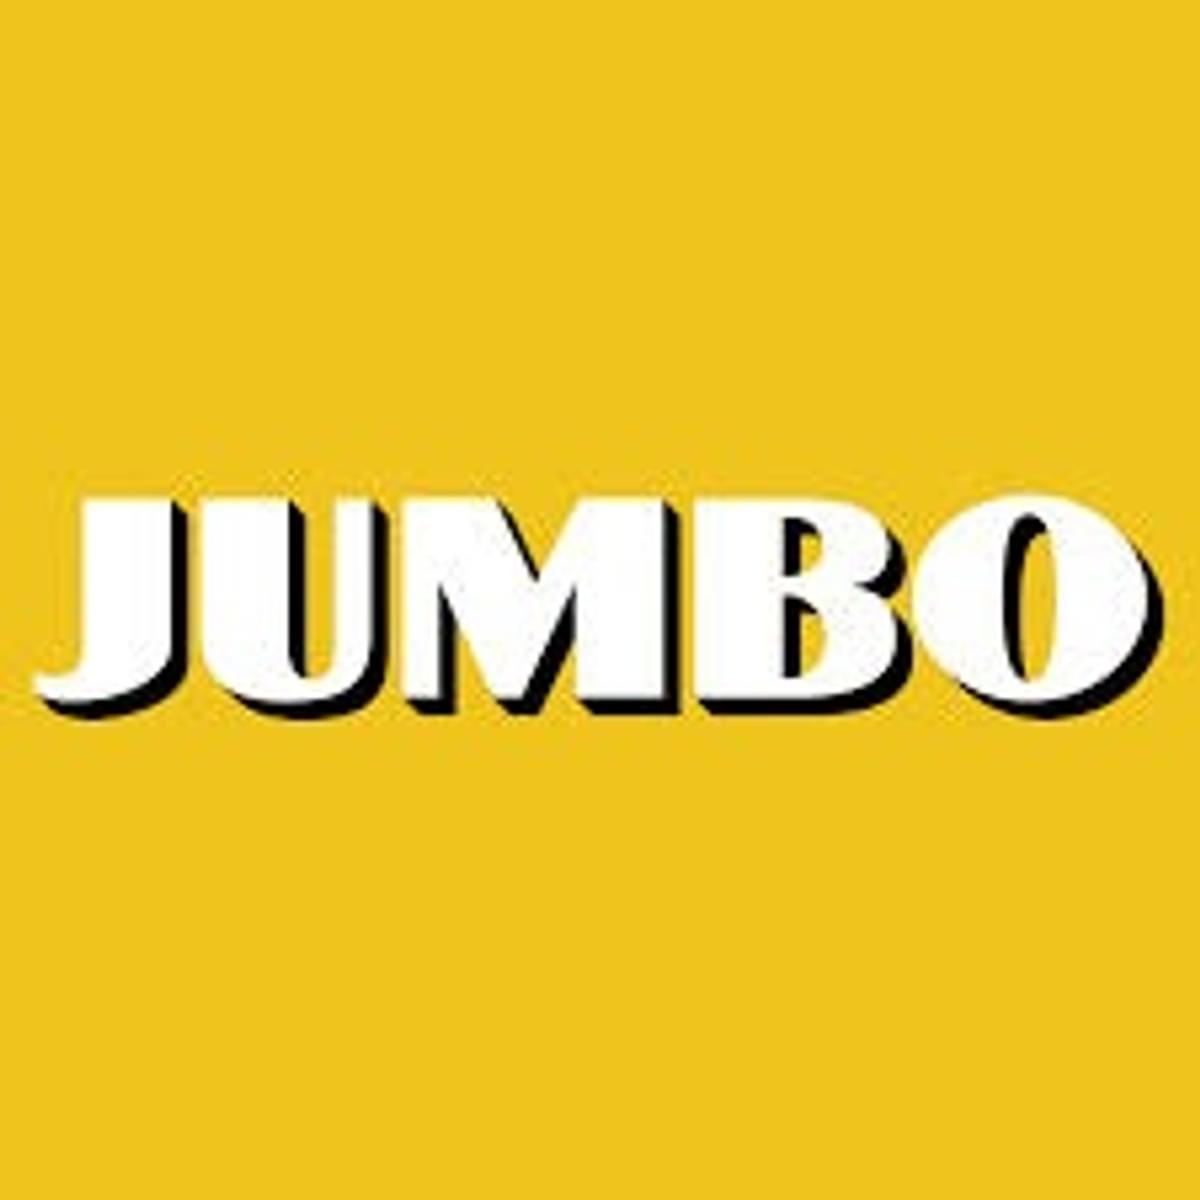 Bynder nieuwe Official Supplier van Team Jumbo-Visma image